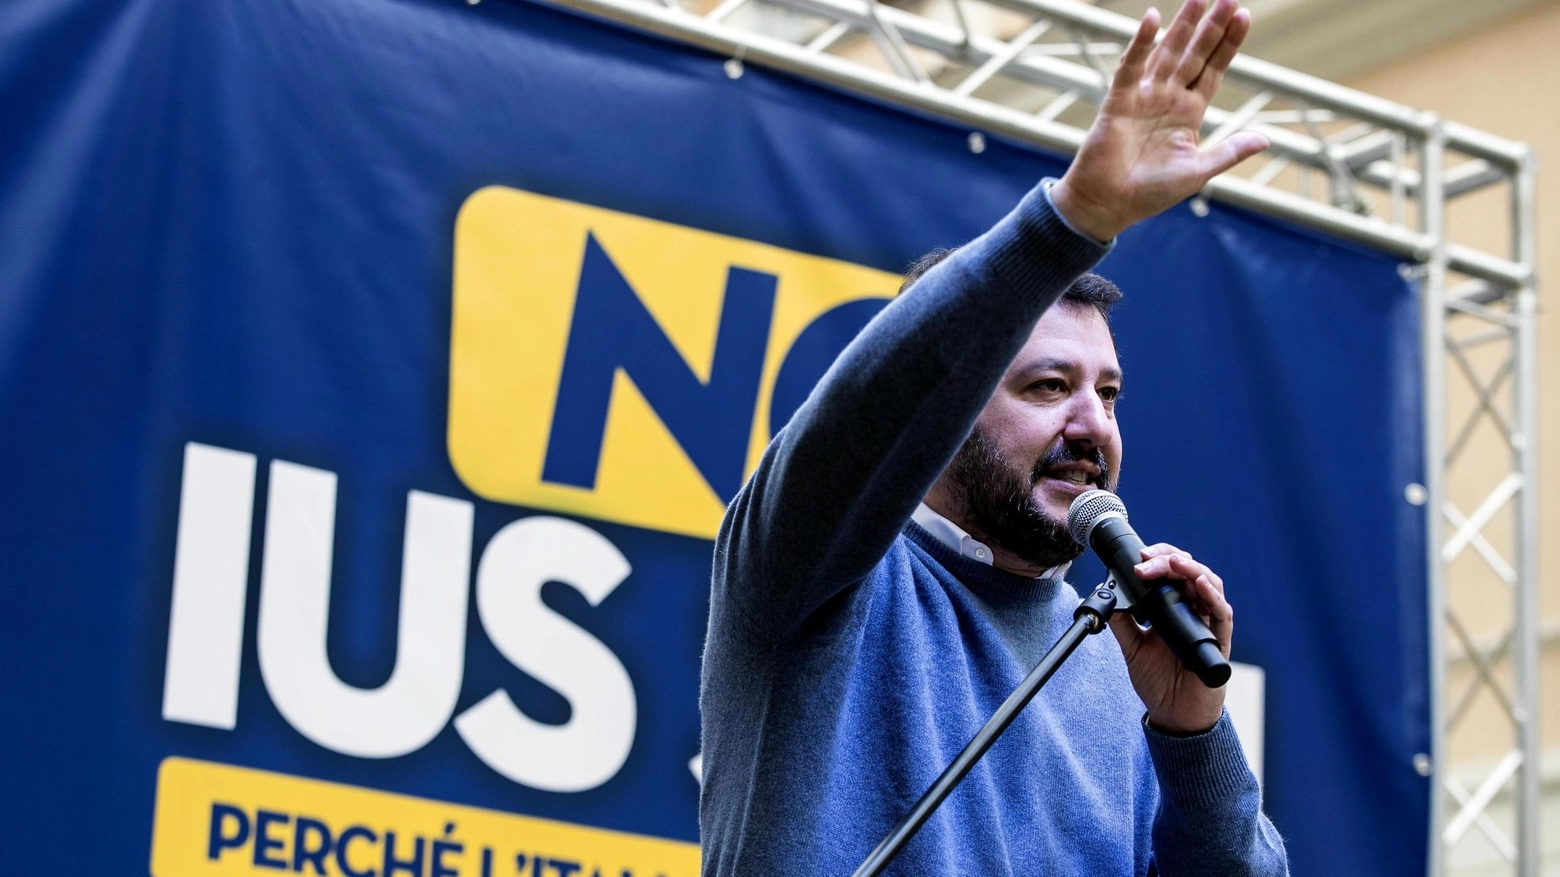 Il leader della Lega Matteo Salvini, 48 anni, manifesta contro lo Ius soli